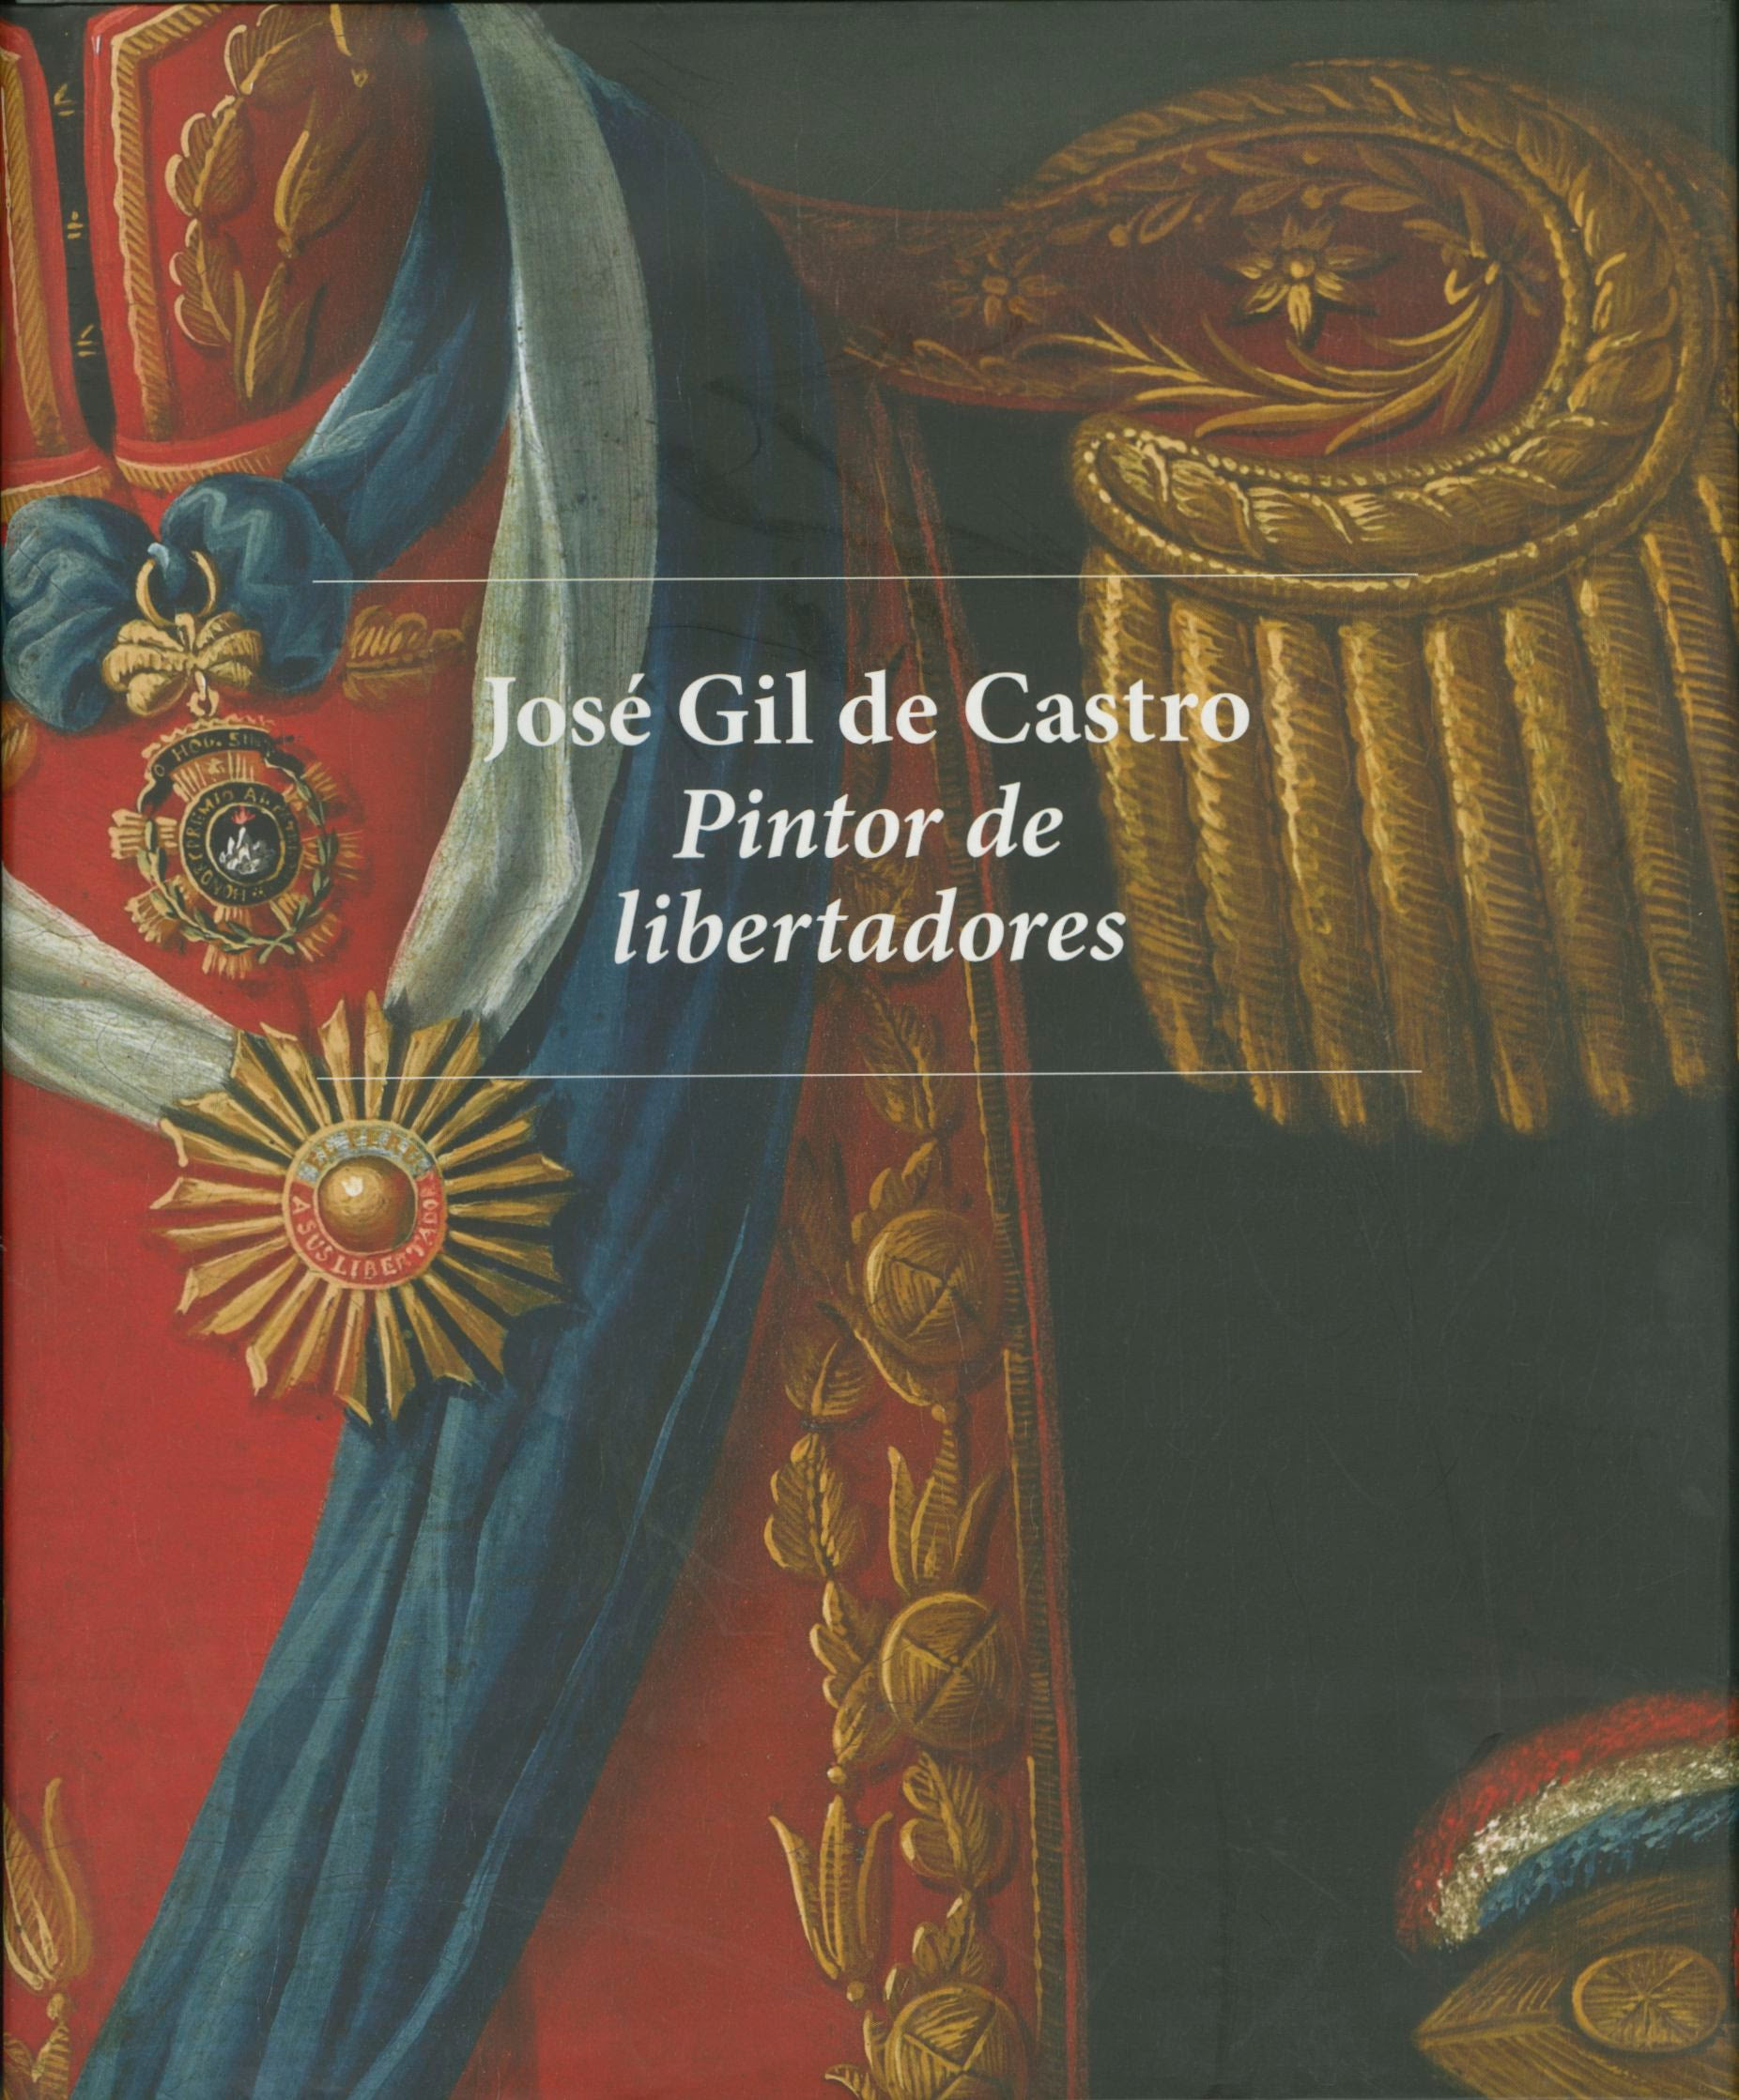 José Gil de Castro: Pintor de libertadores